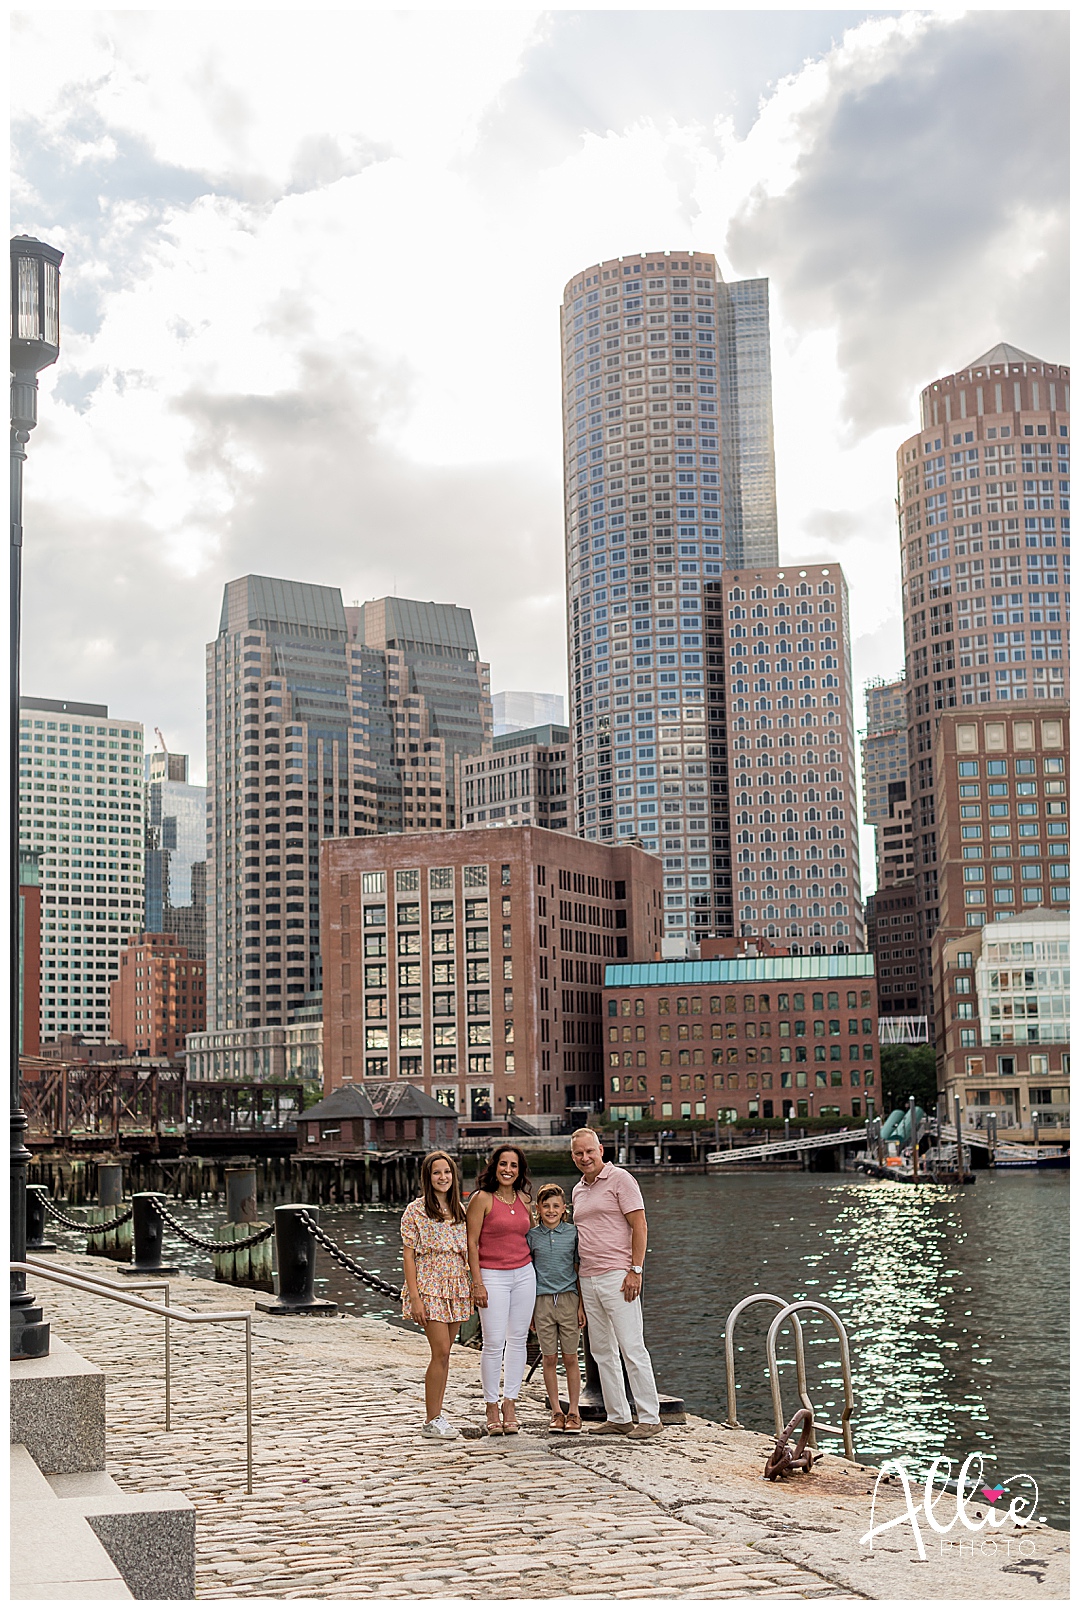 boston area family photos,boston family photographer,family photos in boston,fan pier park,fan pier park family photographer,seaport boston,